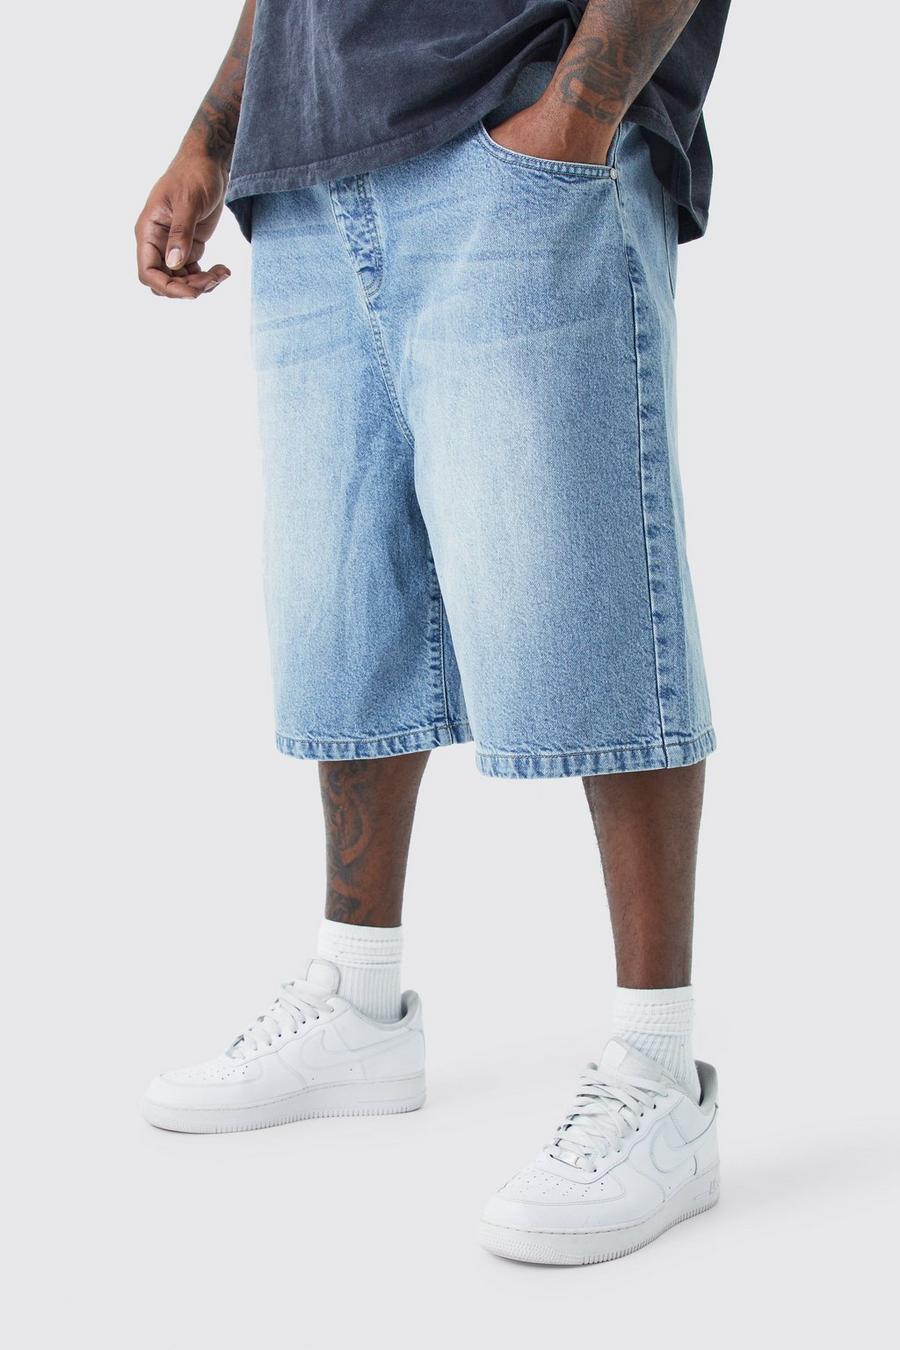 Pantaloni tuta Plus Size in denim in lavaggio azzurro, Light blue